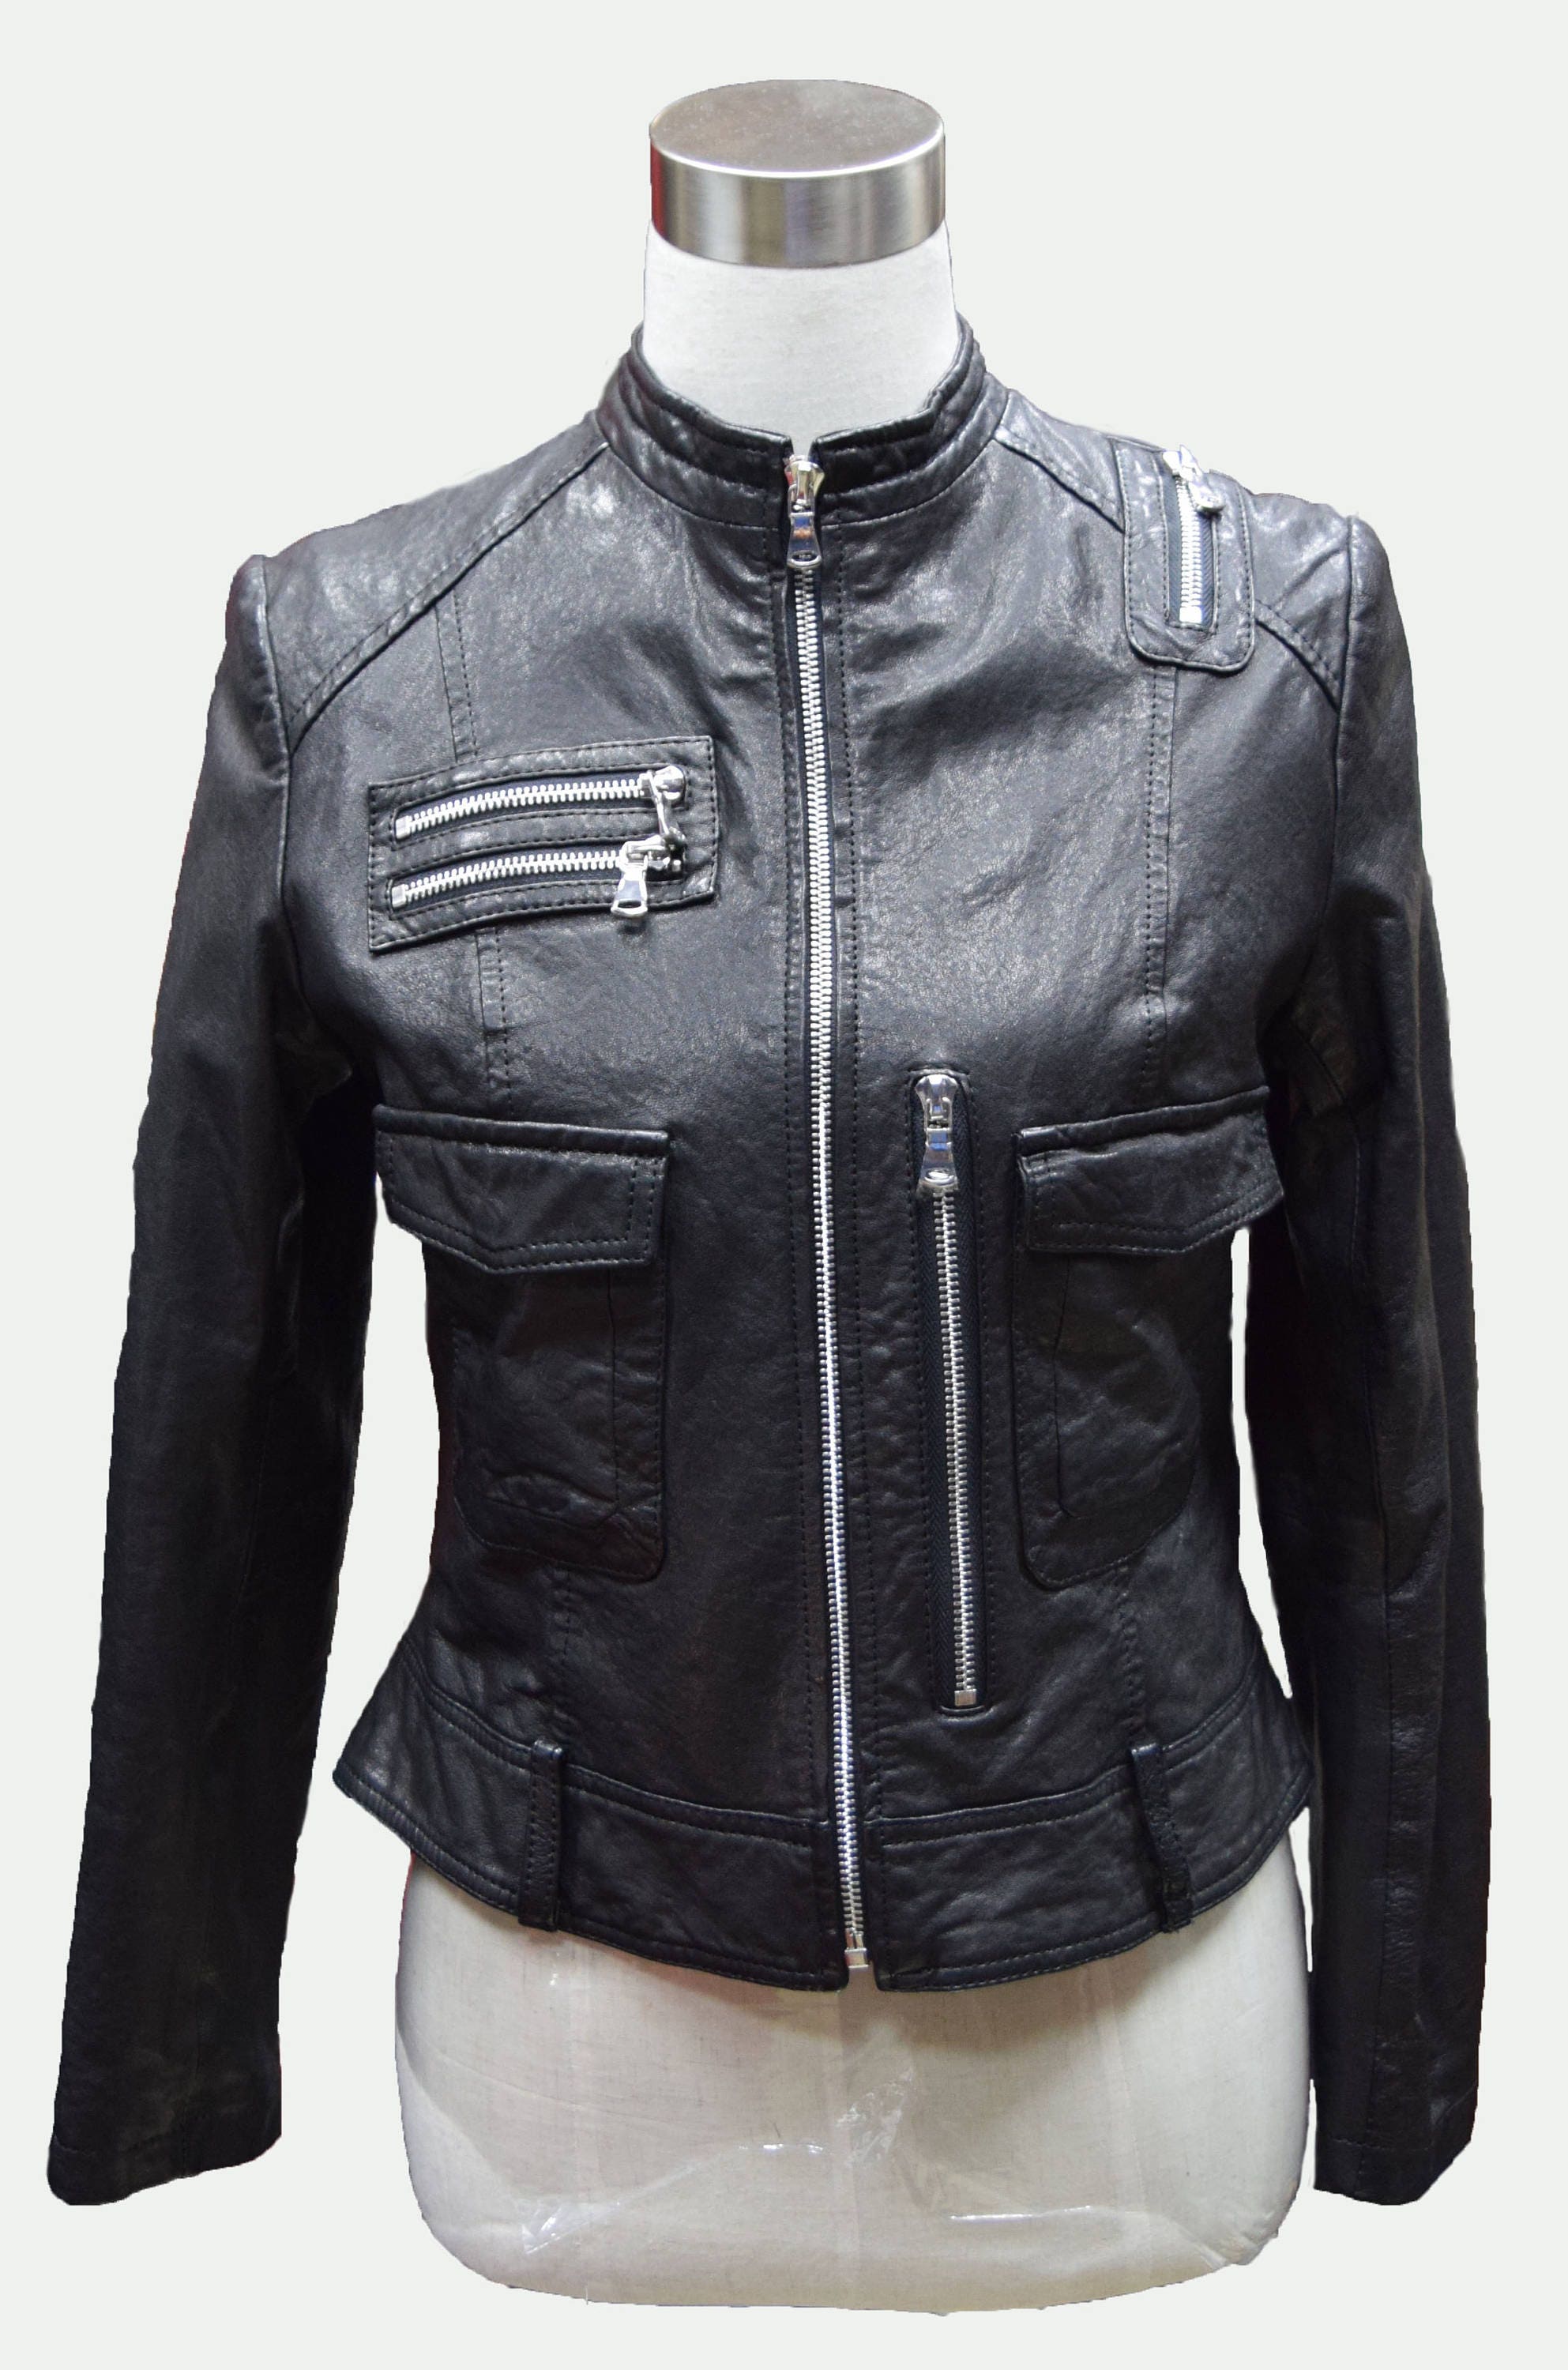 Custom Made Leather Jacket Moto Jacket Black Jacket | Etsy